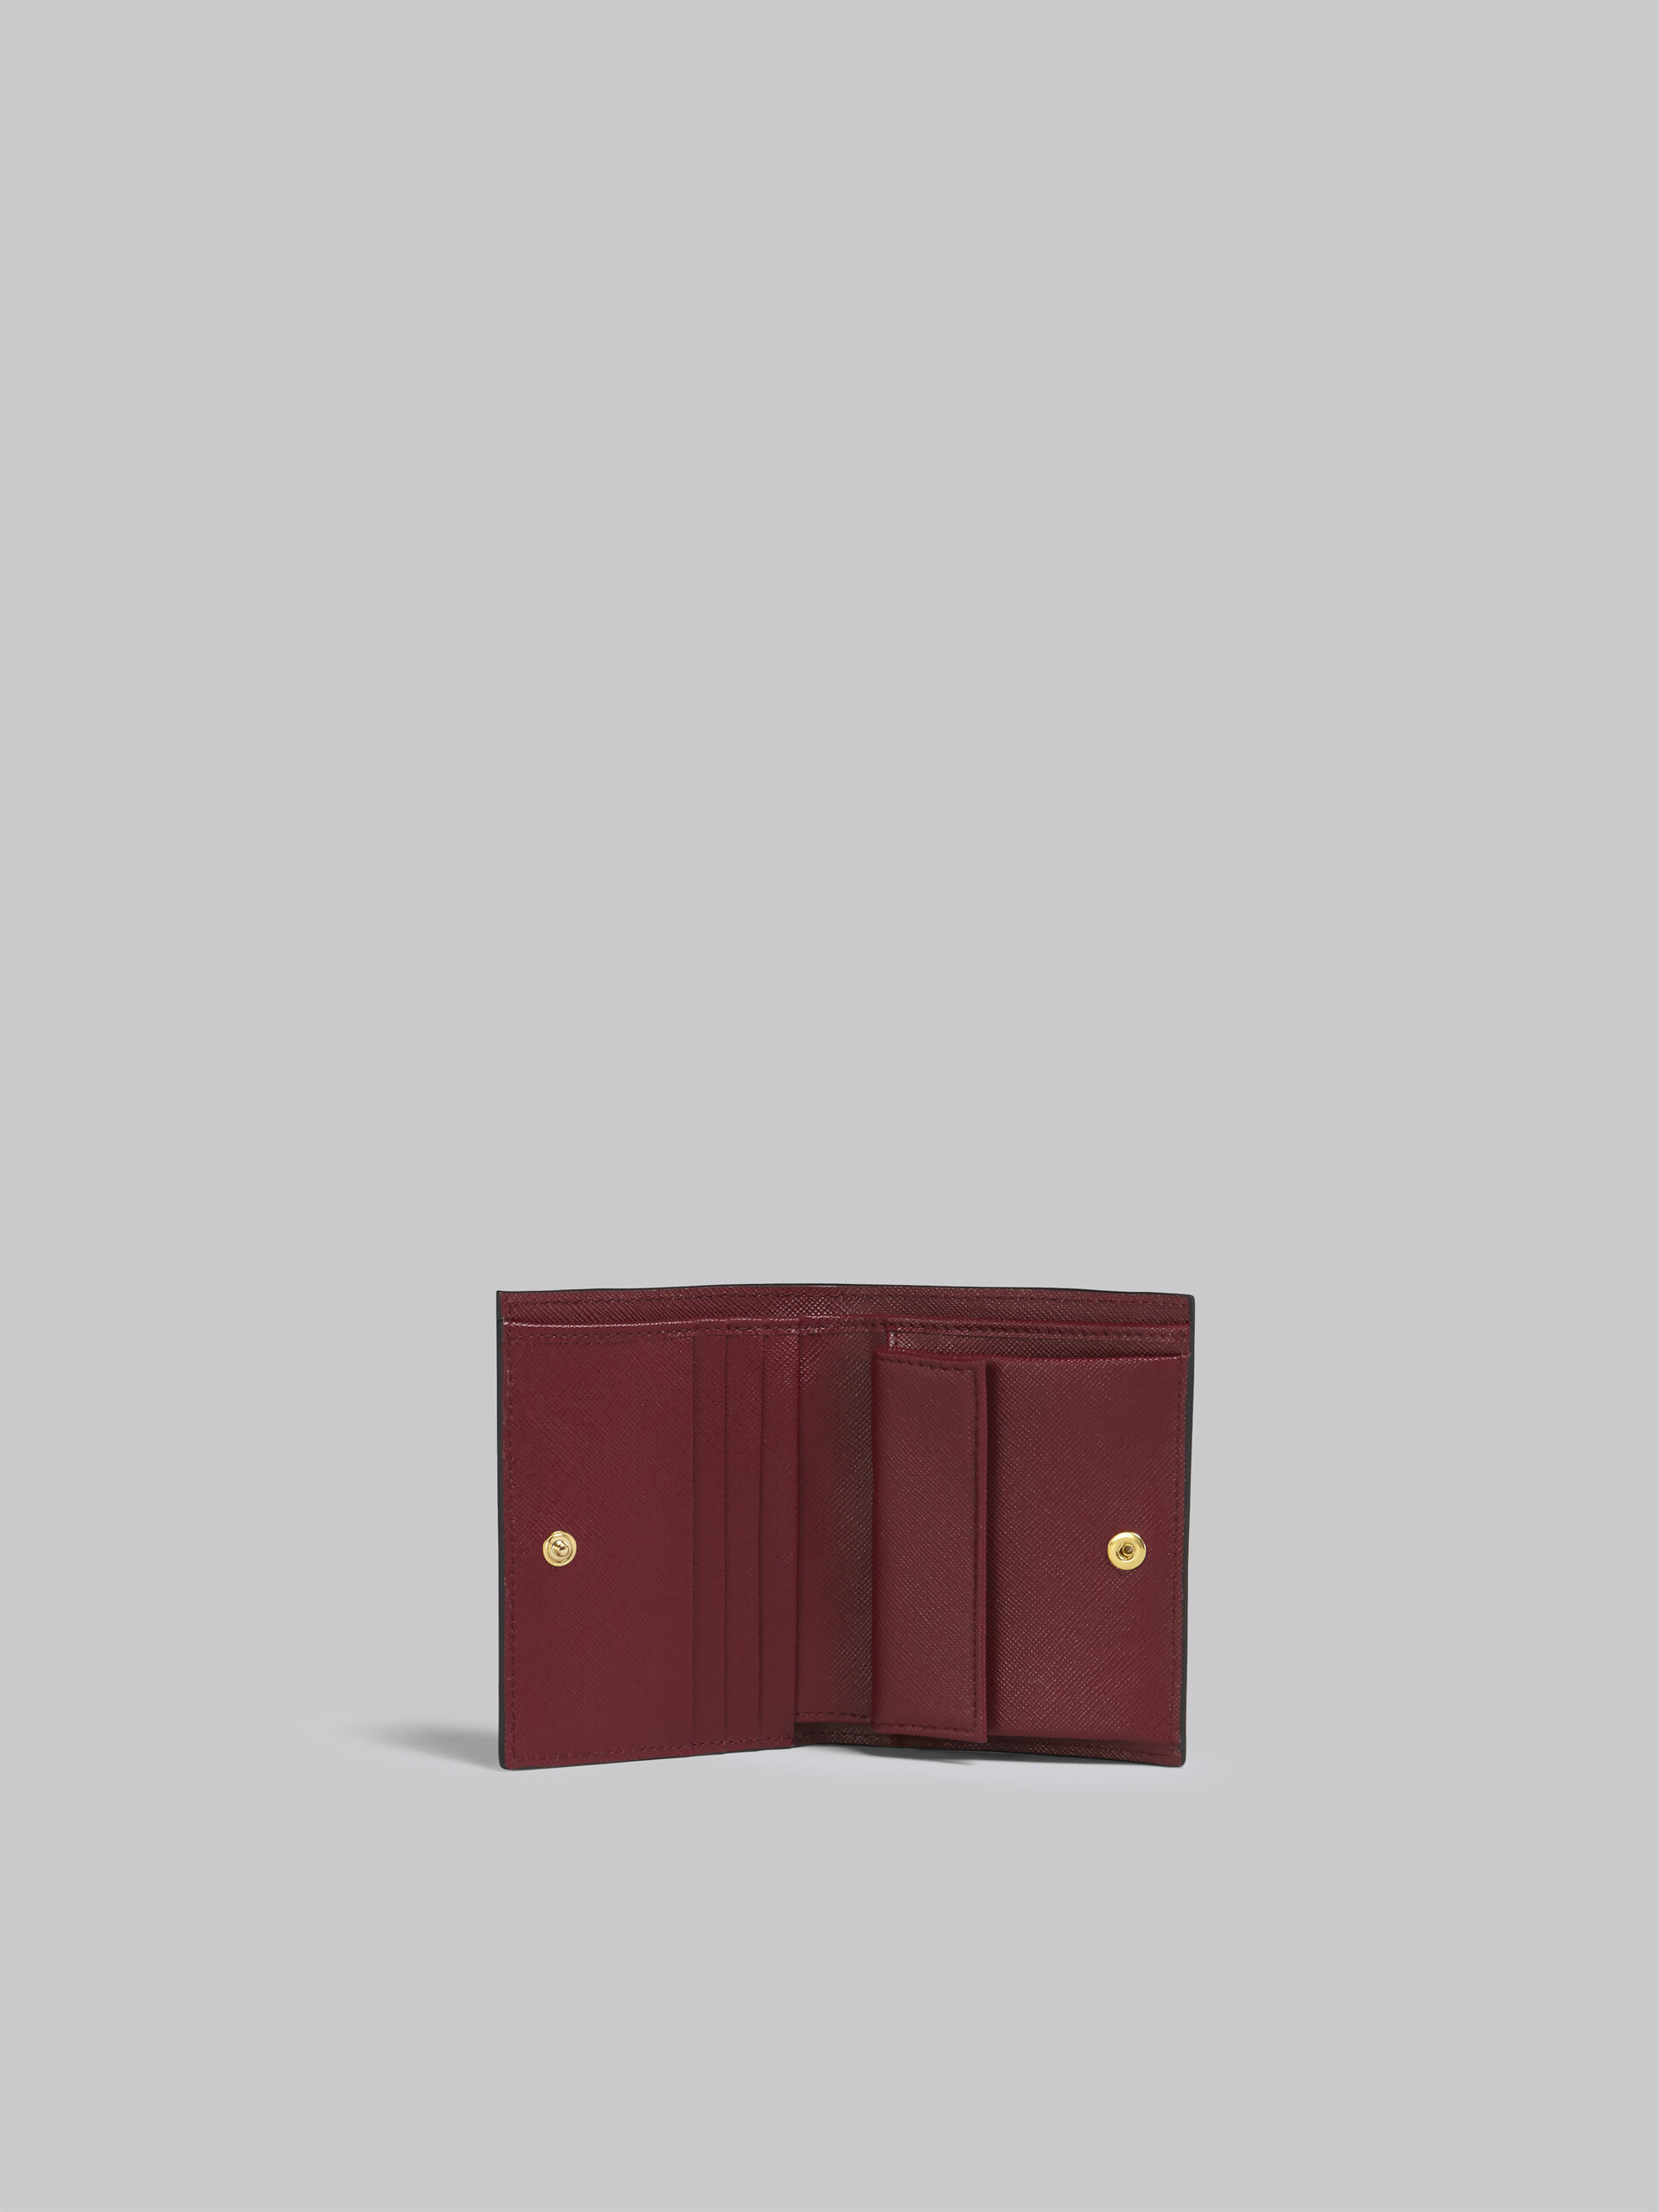 Portafoglio bi-fold in saffiano blu grigio rosso - Portafogli - Image 2